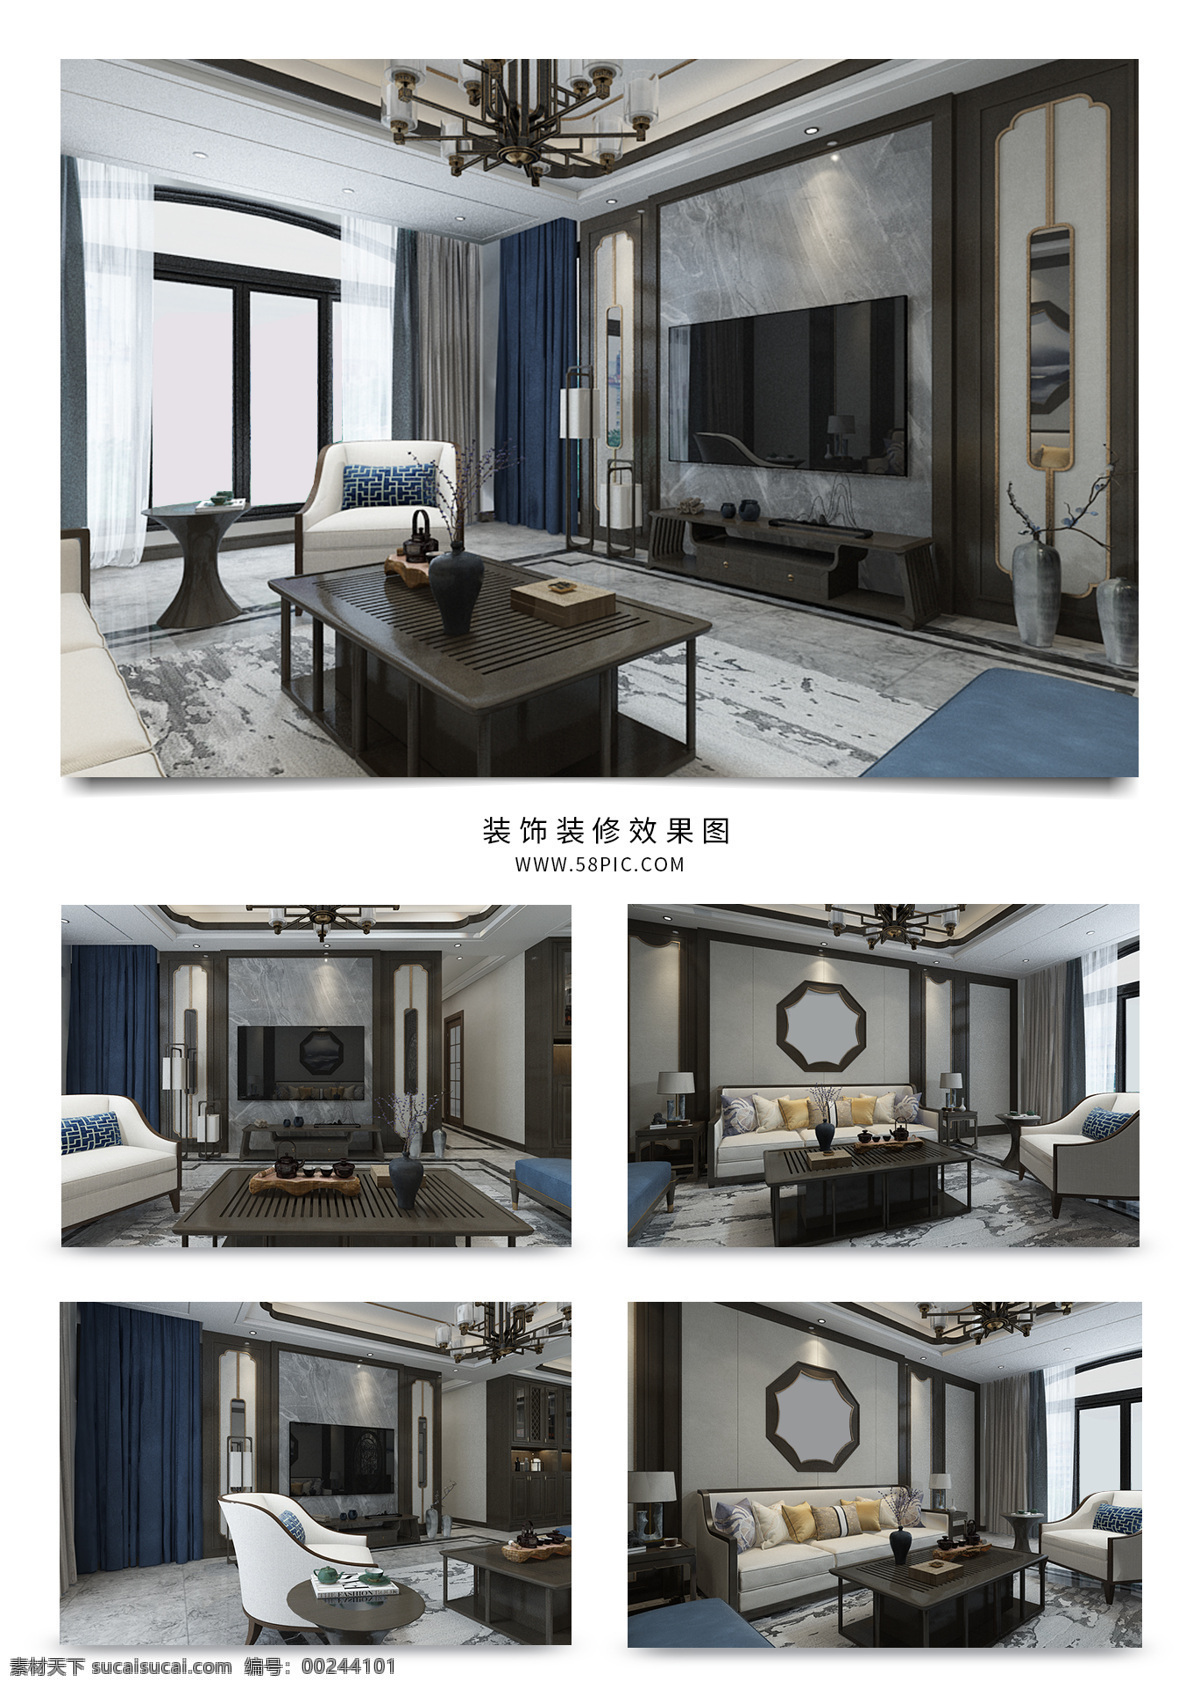 新 中式 风格 精美 客厅 新中式客厅 客厅3d模型 新中式家装 客厅效果图 中式客厅 创意 家居 3d 模型 家装 中式家装室内 室内